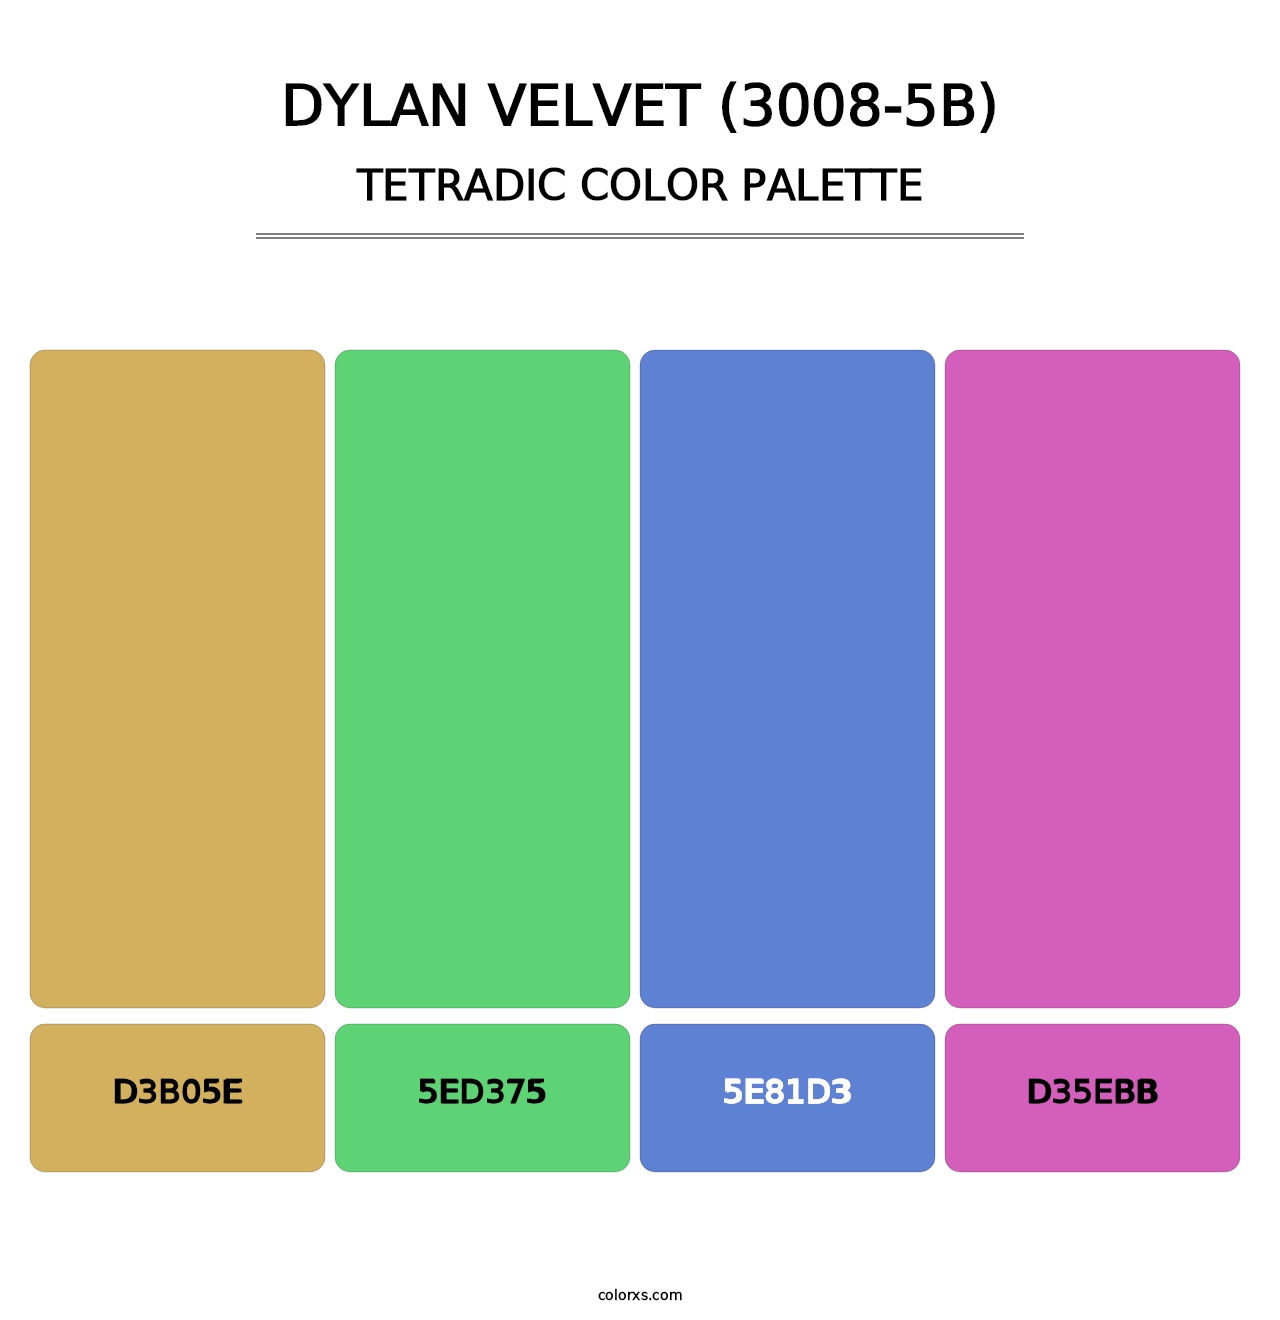 Dylan Velvet (3008-5B) - Tetradic Color Palette